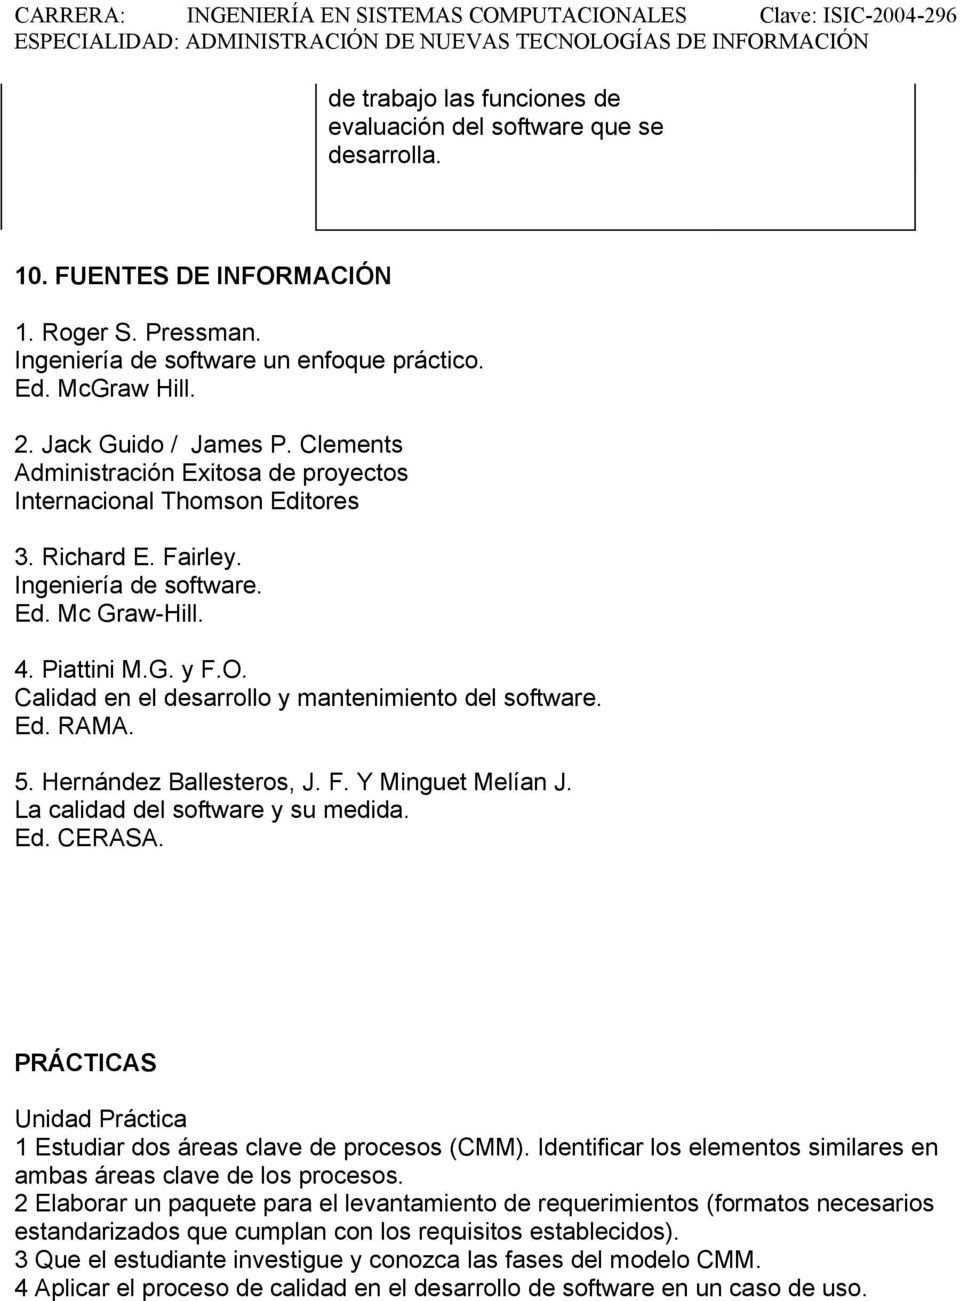 Calidad en el desarrollo y mantenimiento del software. Ed. RAMA. 5. Hernández Ballesteros, J. F. Y Minguet Melían J. La calidad del software y su medida. Ed. CERASA.